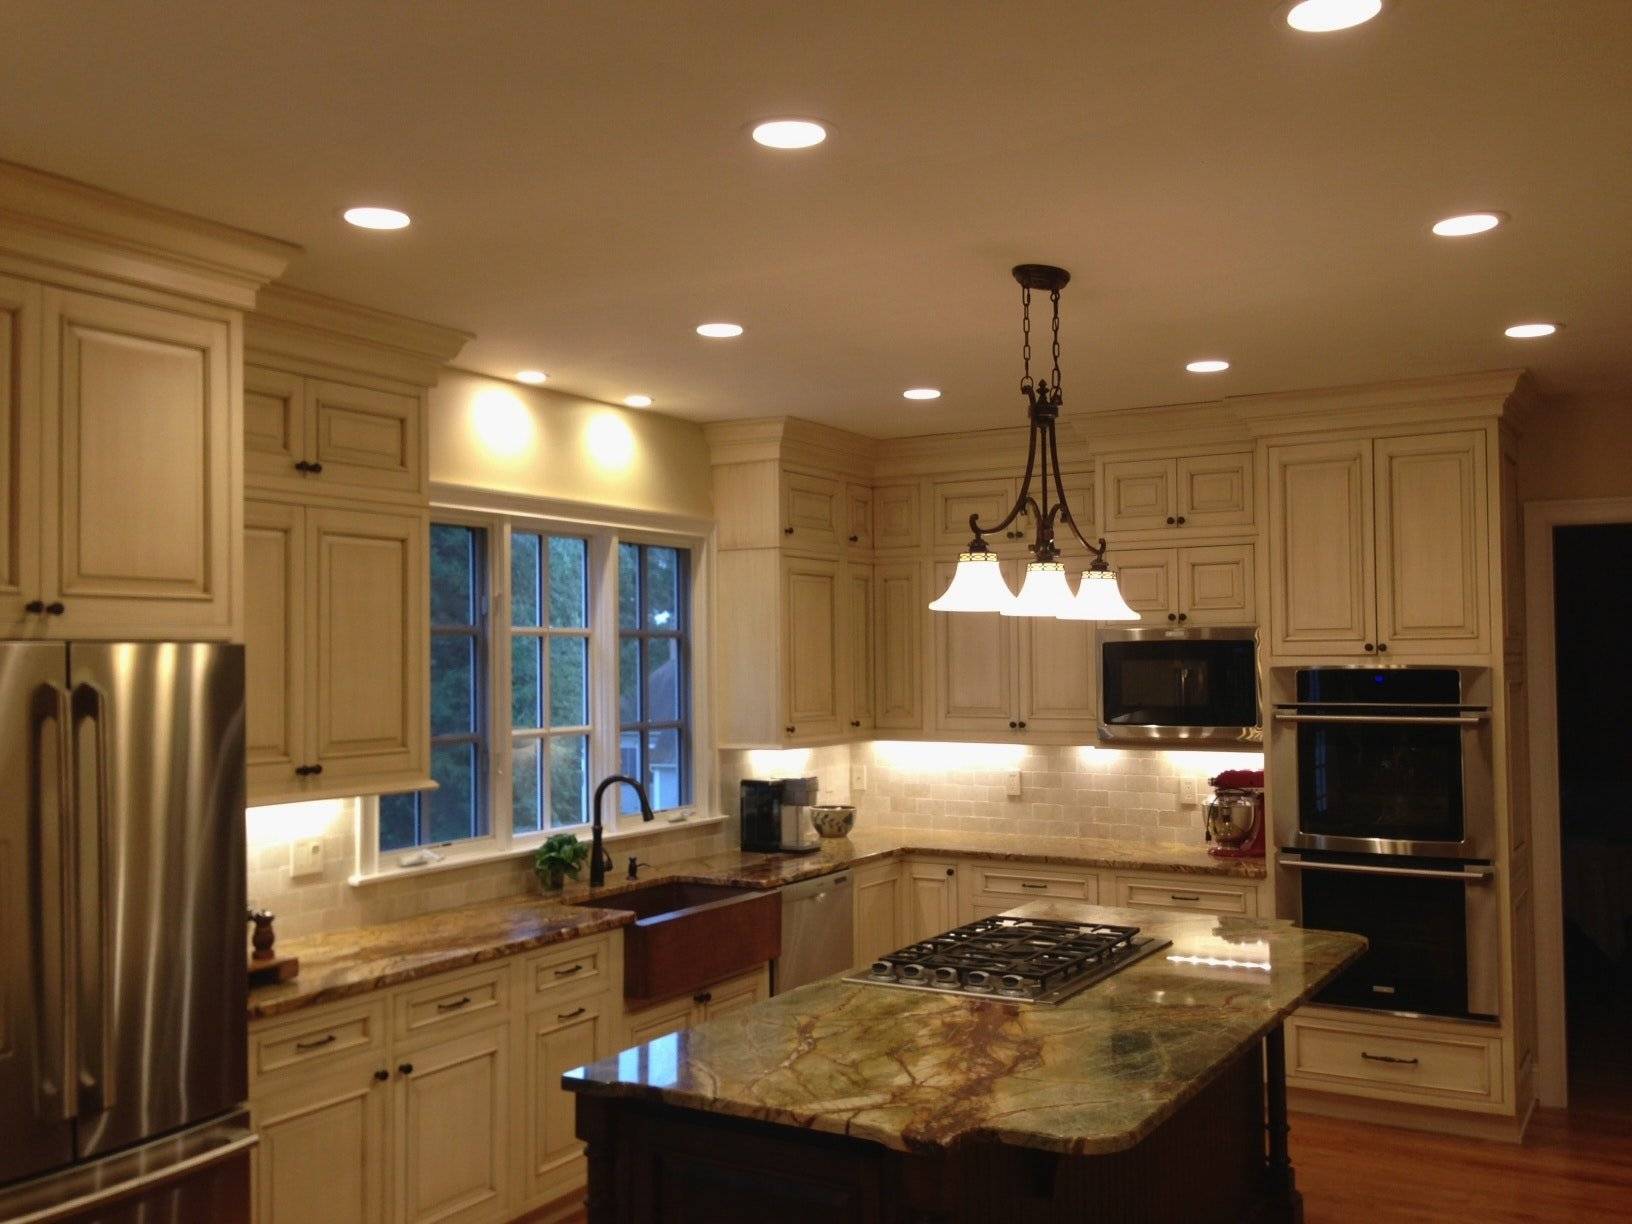 Обзор разных вариантов освещения на кухне и монтаж своими руками